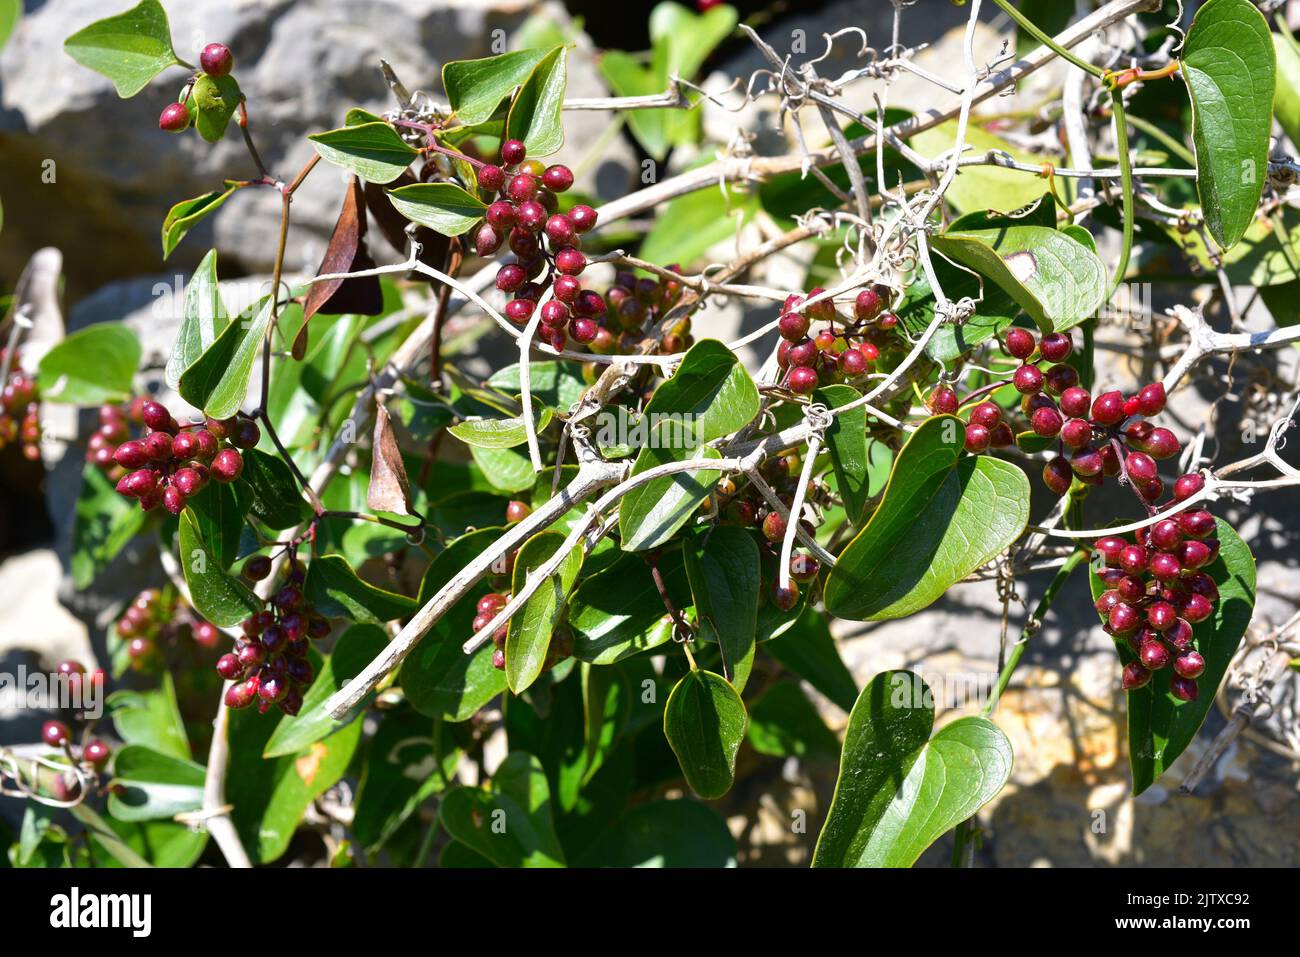 Raue Bindweed oder Sarsaparille (Smilax aspera) ist eine stachelige Kletterpflanze, die in Südeuropa, Zentralafrika und Asien beheimatet ist. Dieses Foto wurde aufgenommen in Stockfoto